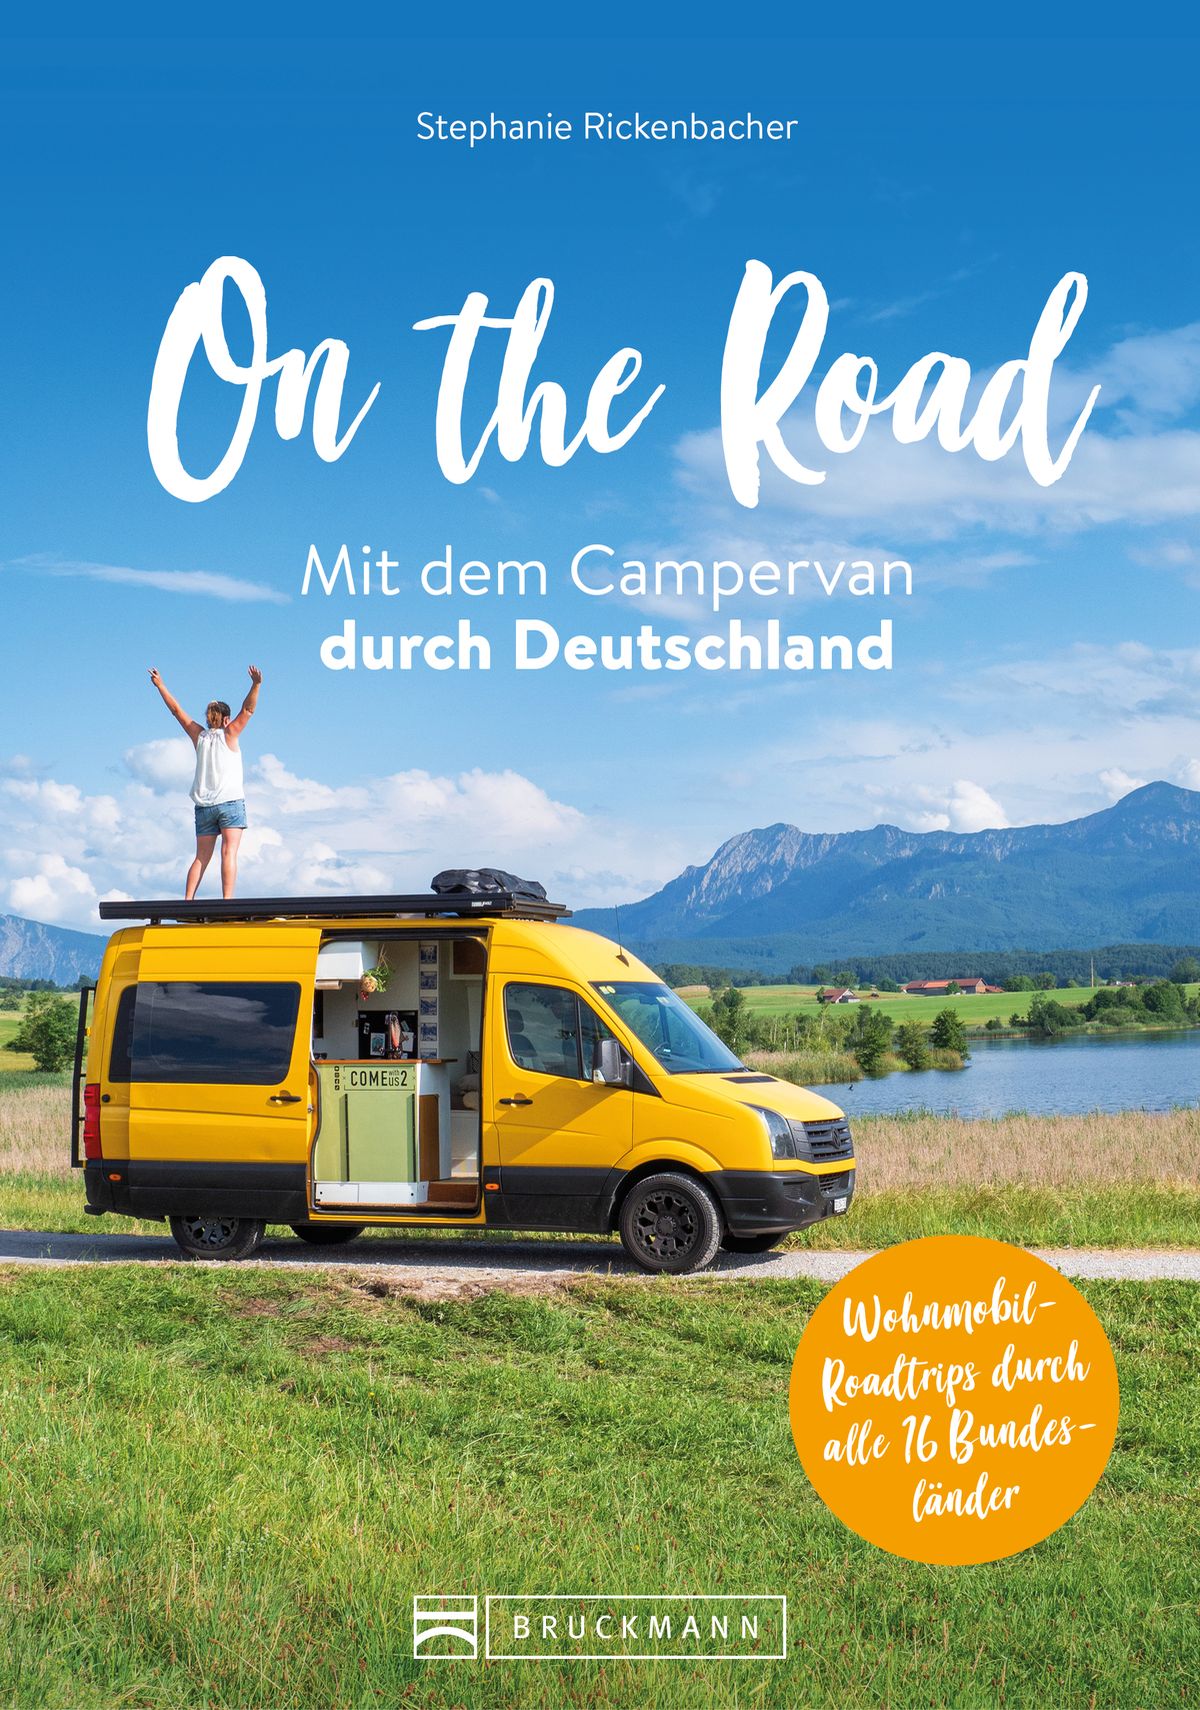 Foto: On the Road - mit dem Campervan durch Deutschland.